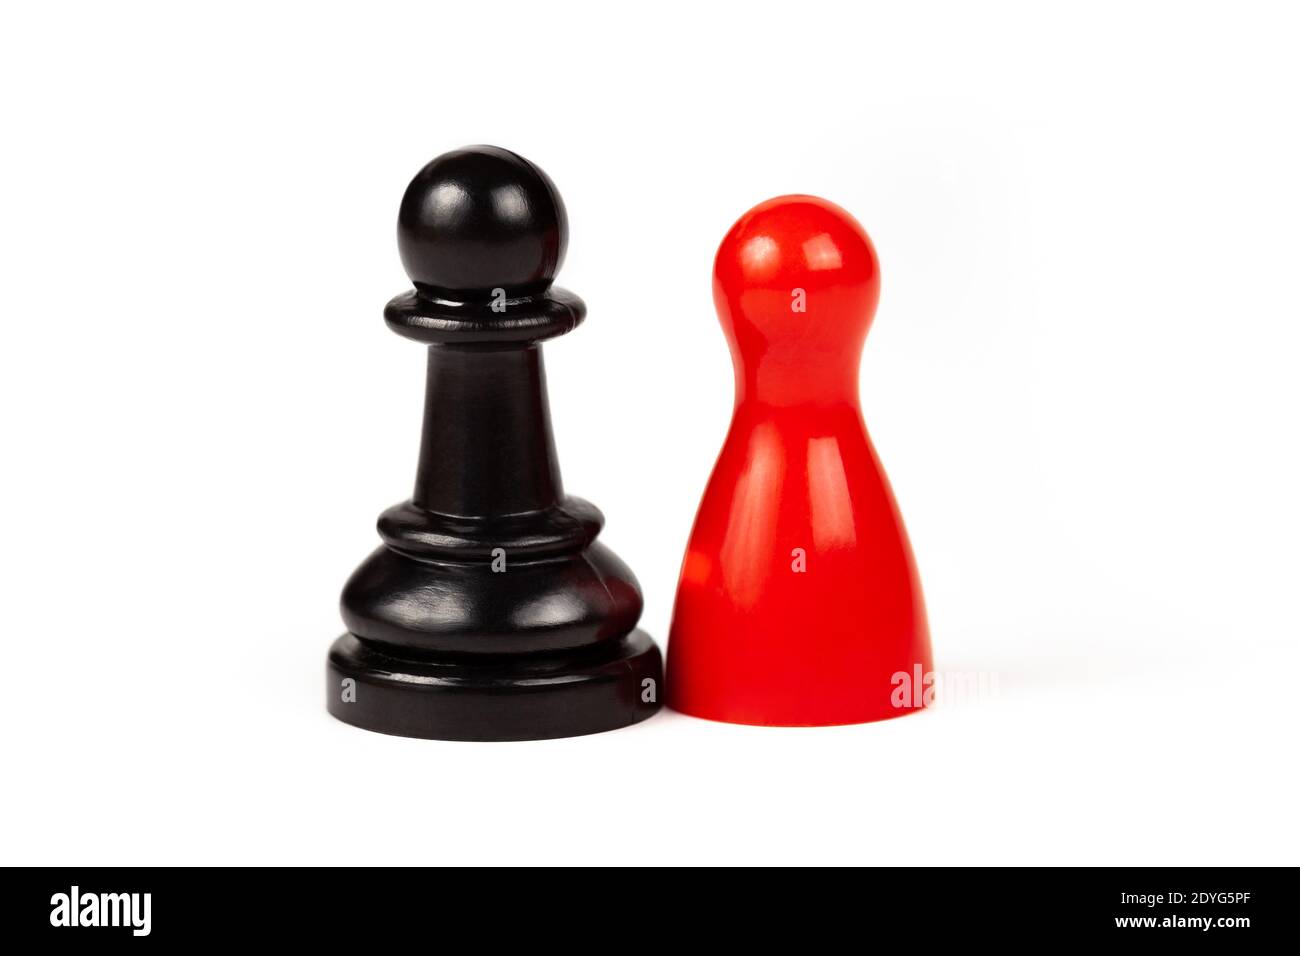 Unterschiede gepaart Zweisamkeit Konzept, zwei Stücke. Rotes Spielstück und ein schwarzer Schachpfand stehen zusammen, isoliert auf Weiß, ausgeschnitten. Vielfalt Stockfoto